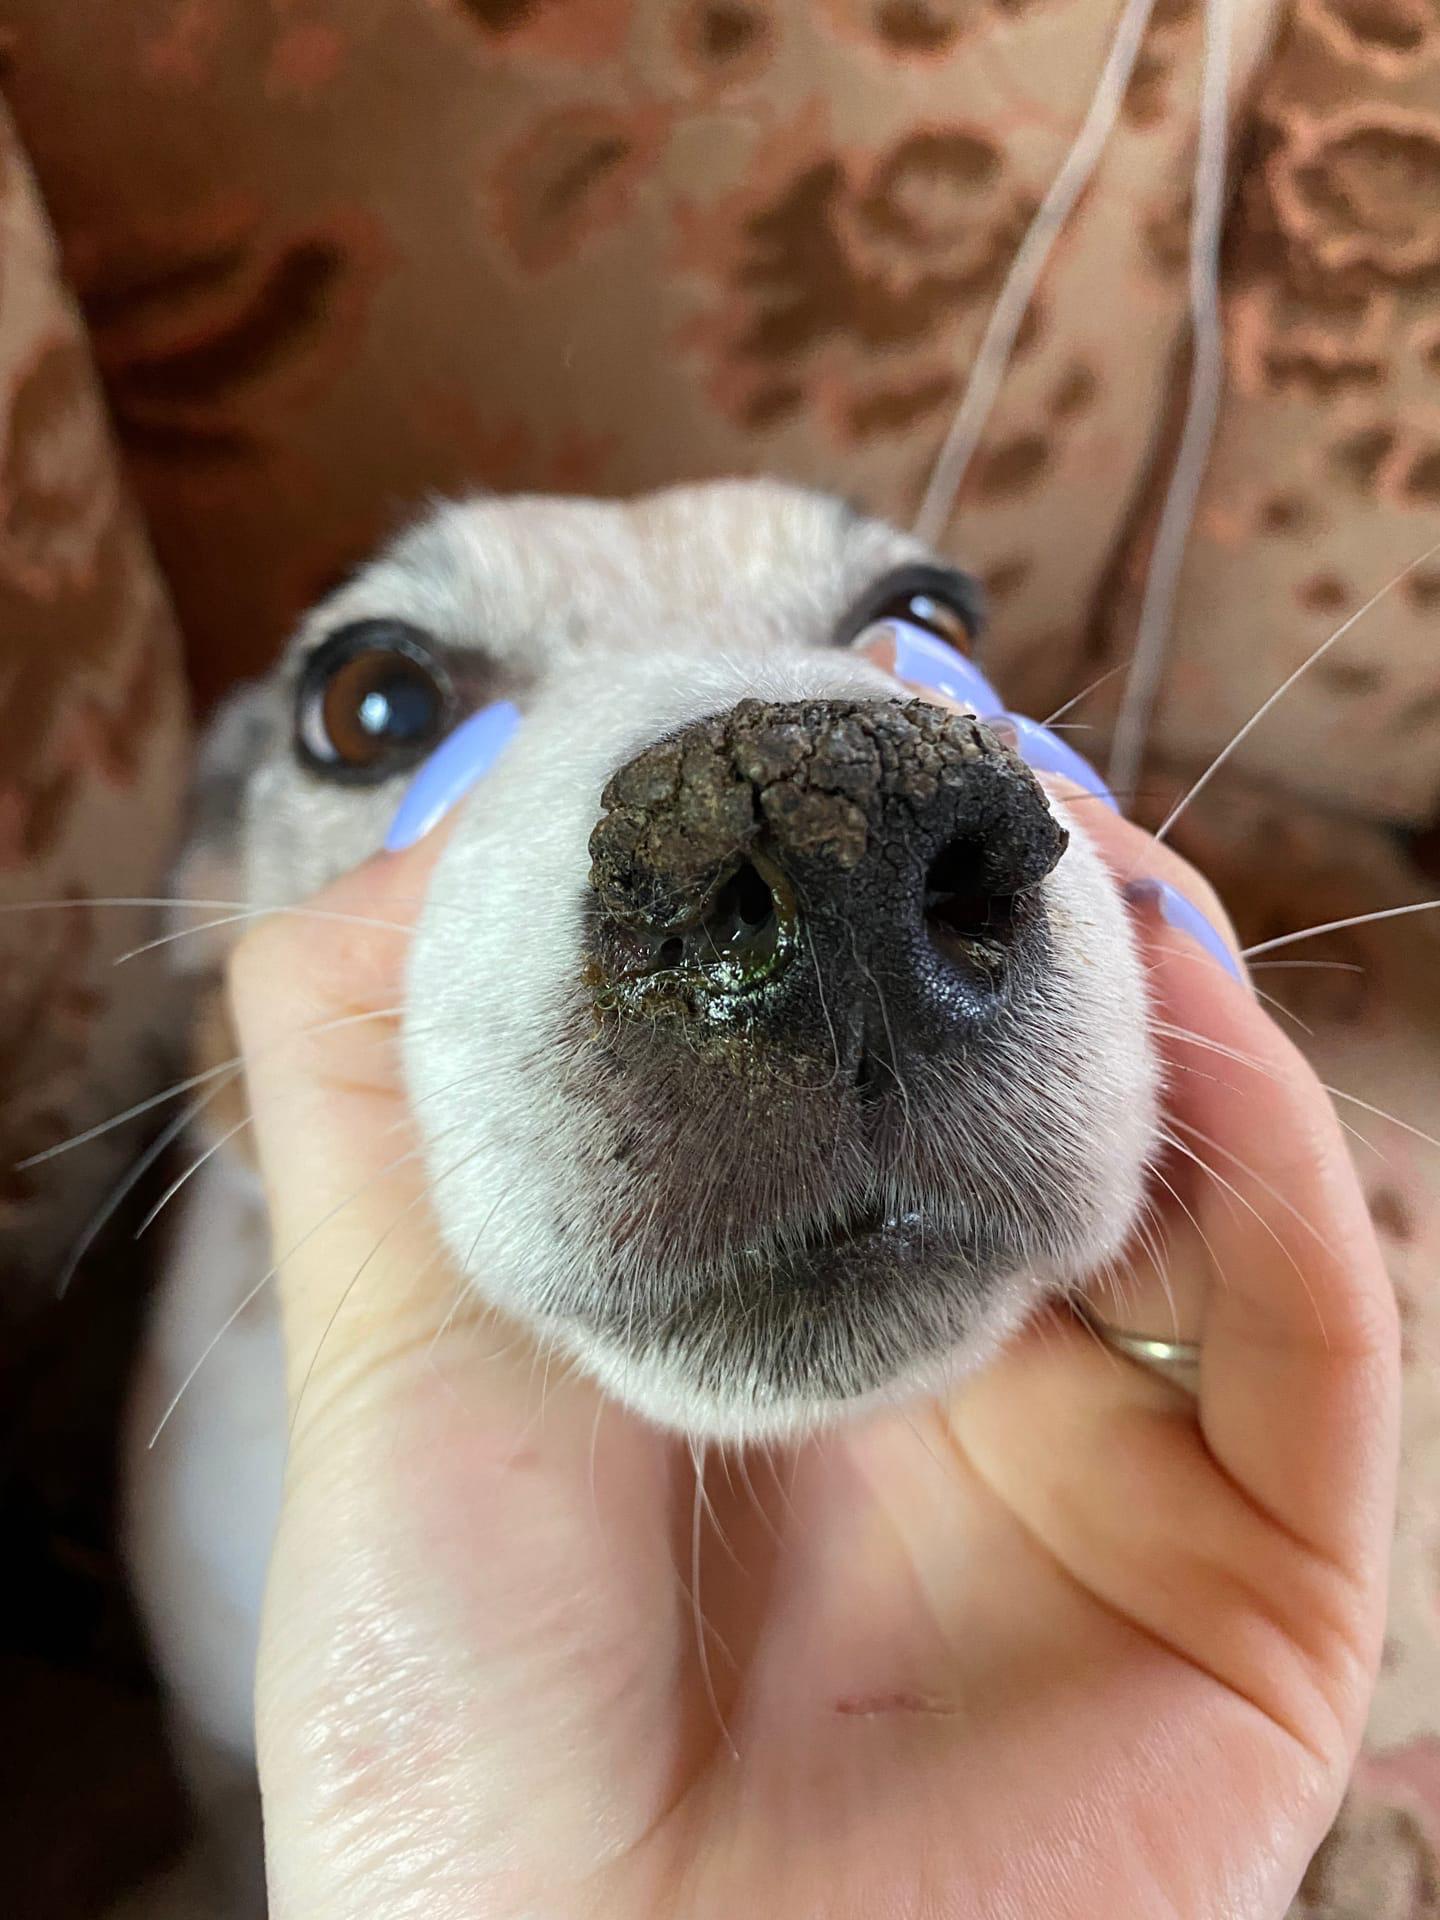 Корочки на носу у собаки, бесплатная консультация ветеринара - вопрос задан  пользователем Анна Козлова про питомца: собака Джек-рассел-терьер